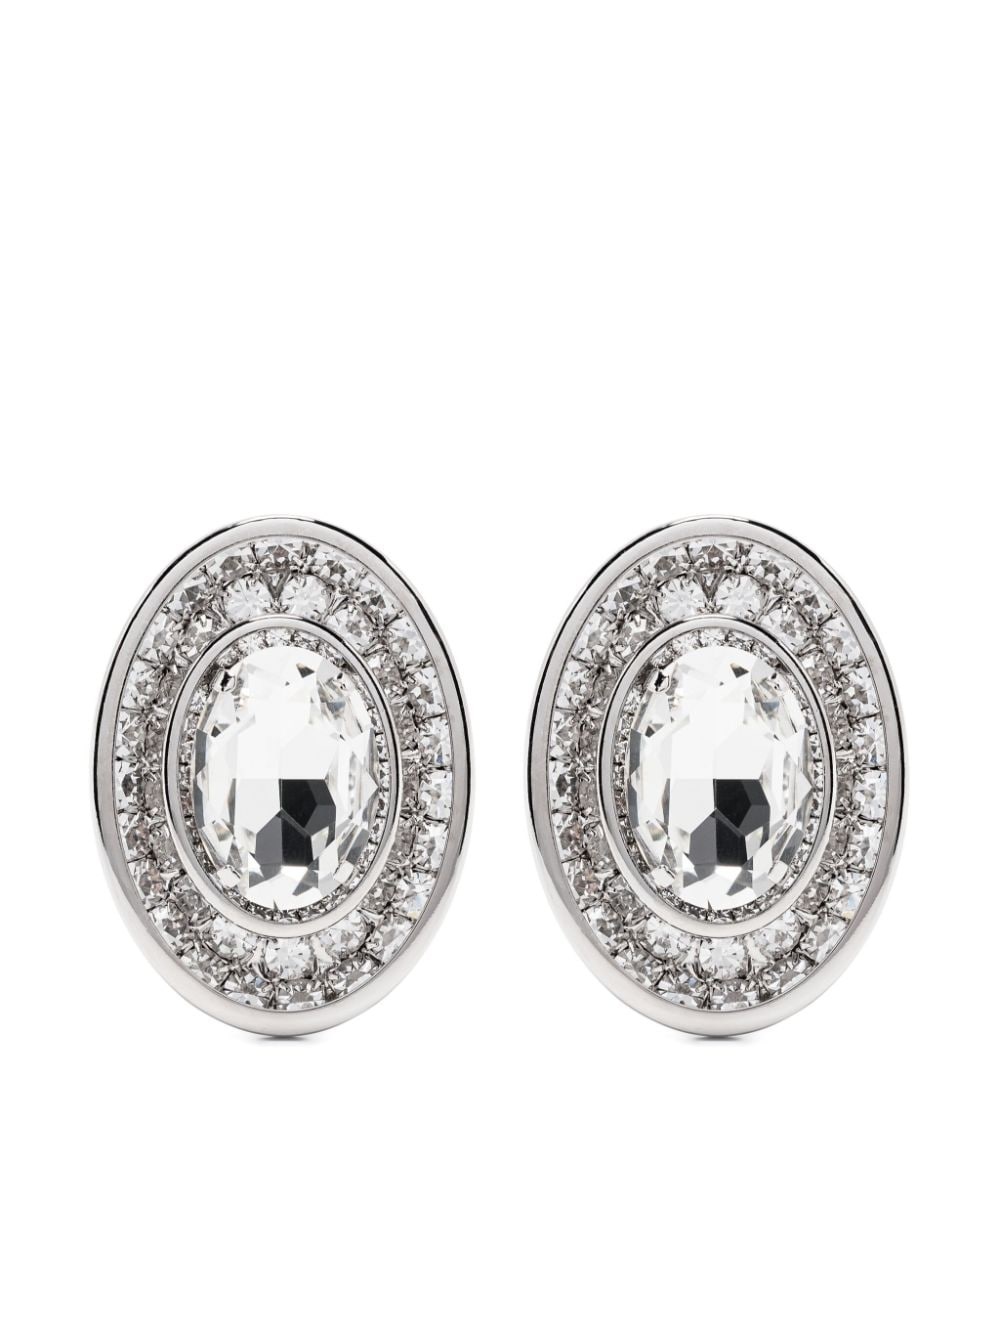 oval-shape crystal earrings - 1